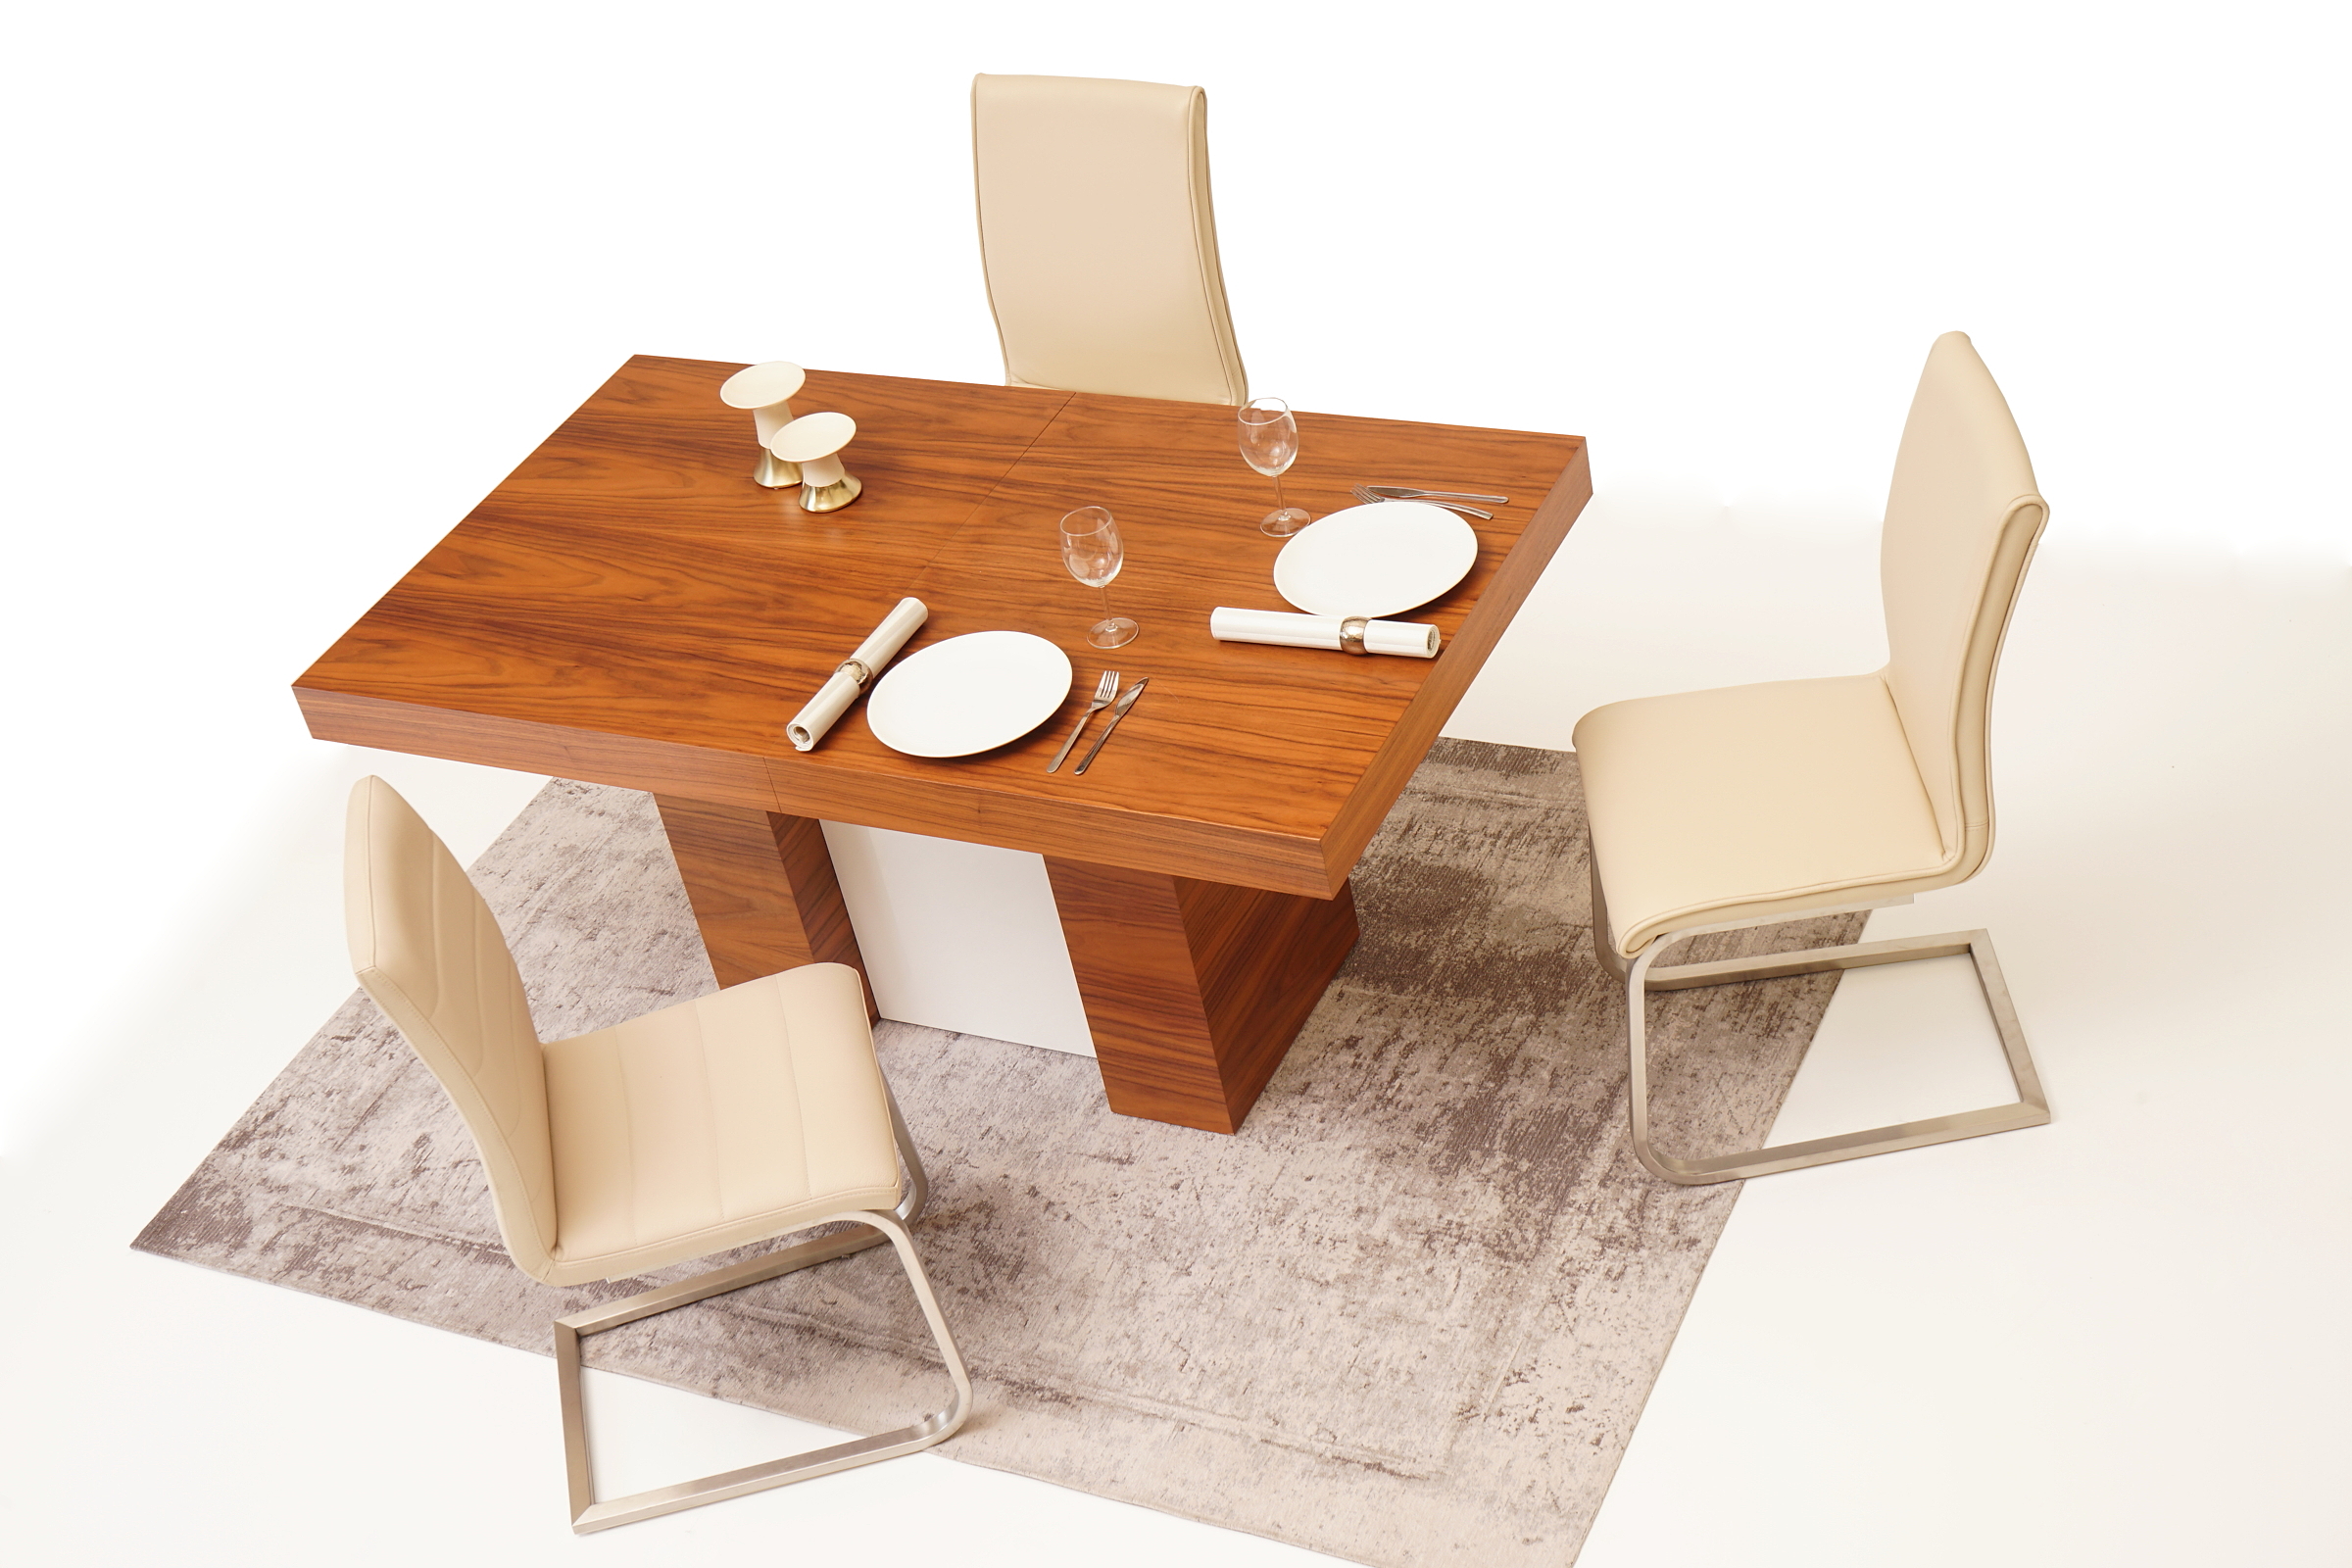 Nuvo jadalnia meble nowoczesne stół orzech amerykański metalowe krzesła